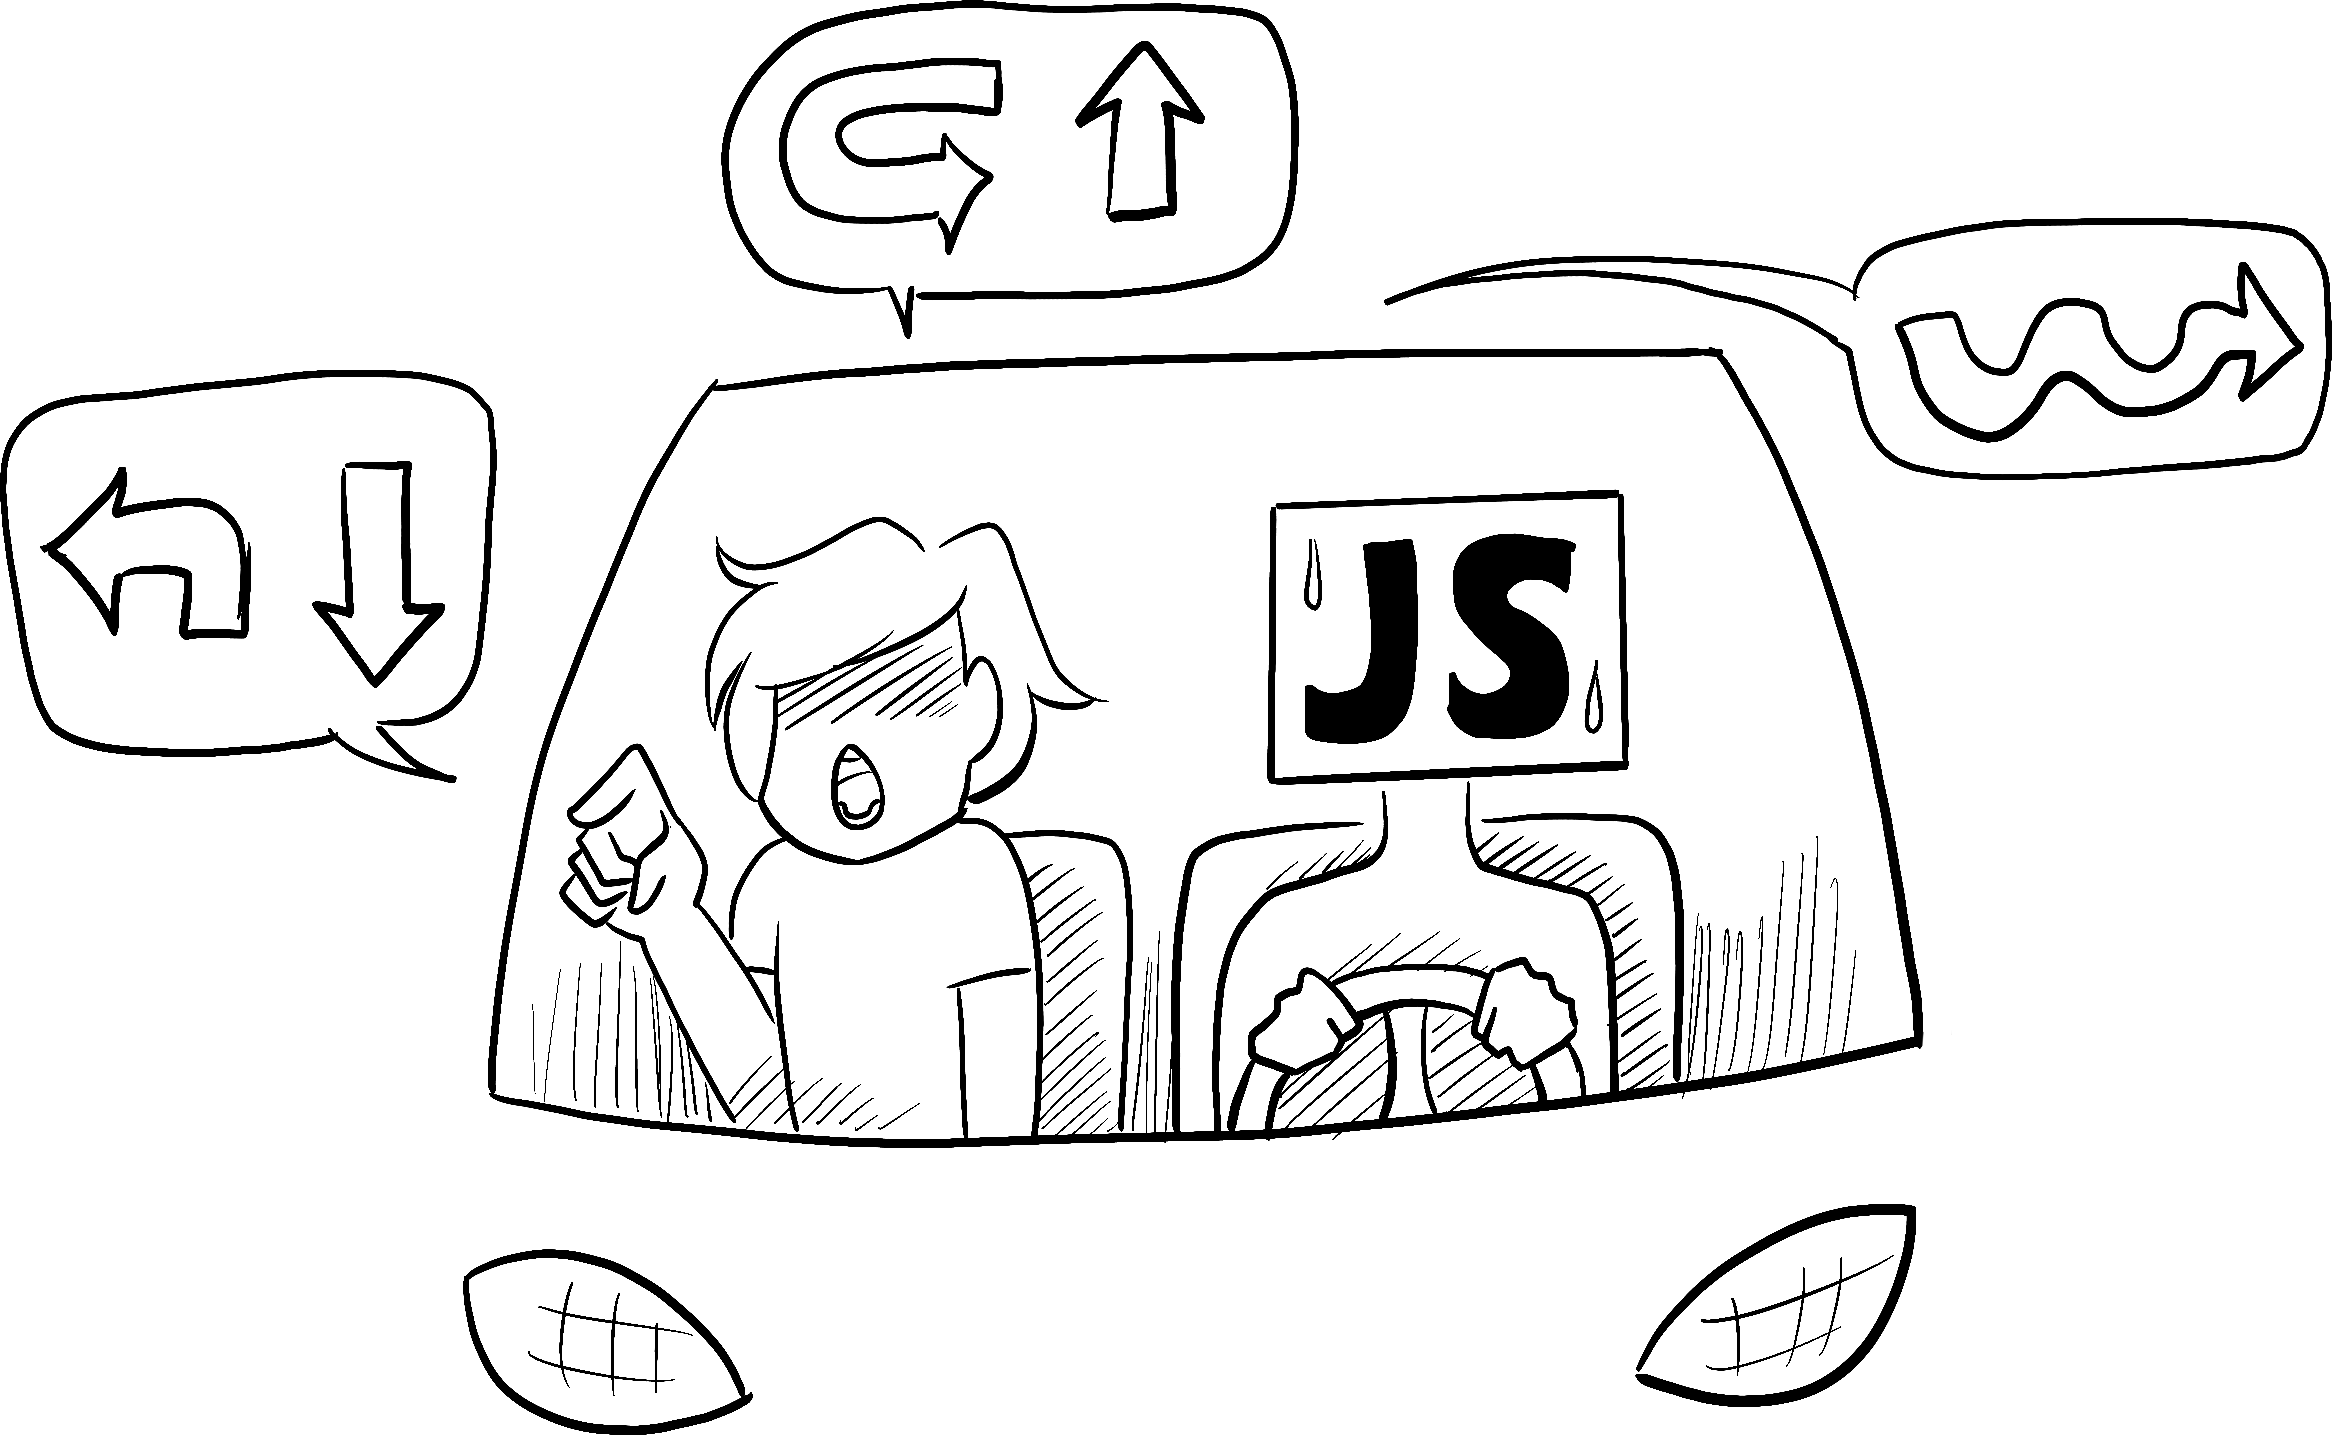 Машину ведёт неуверенный человек, который играет роль JavaScript, а водитель даёт указания как проехать по маршруту.